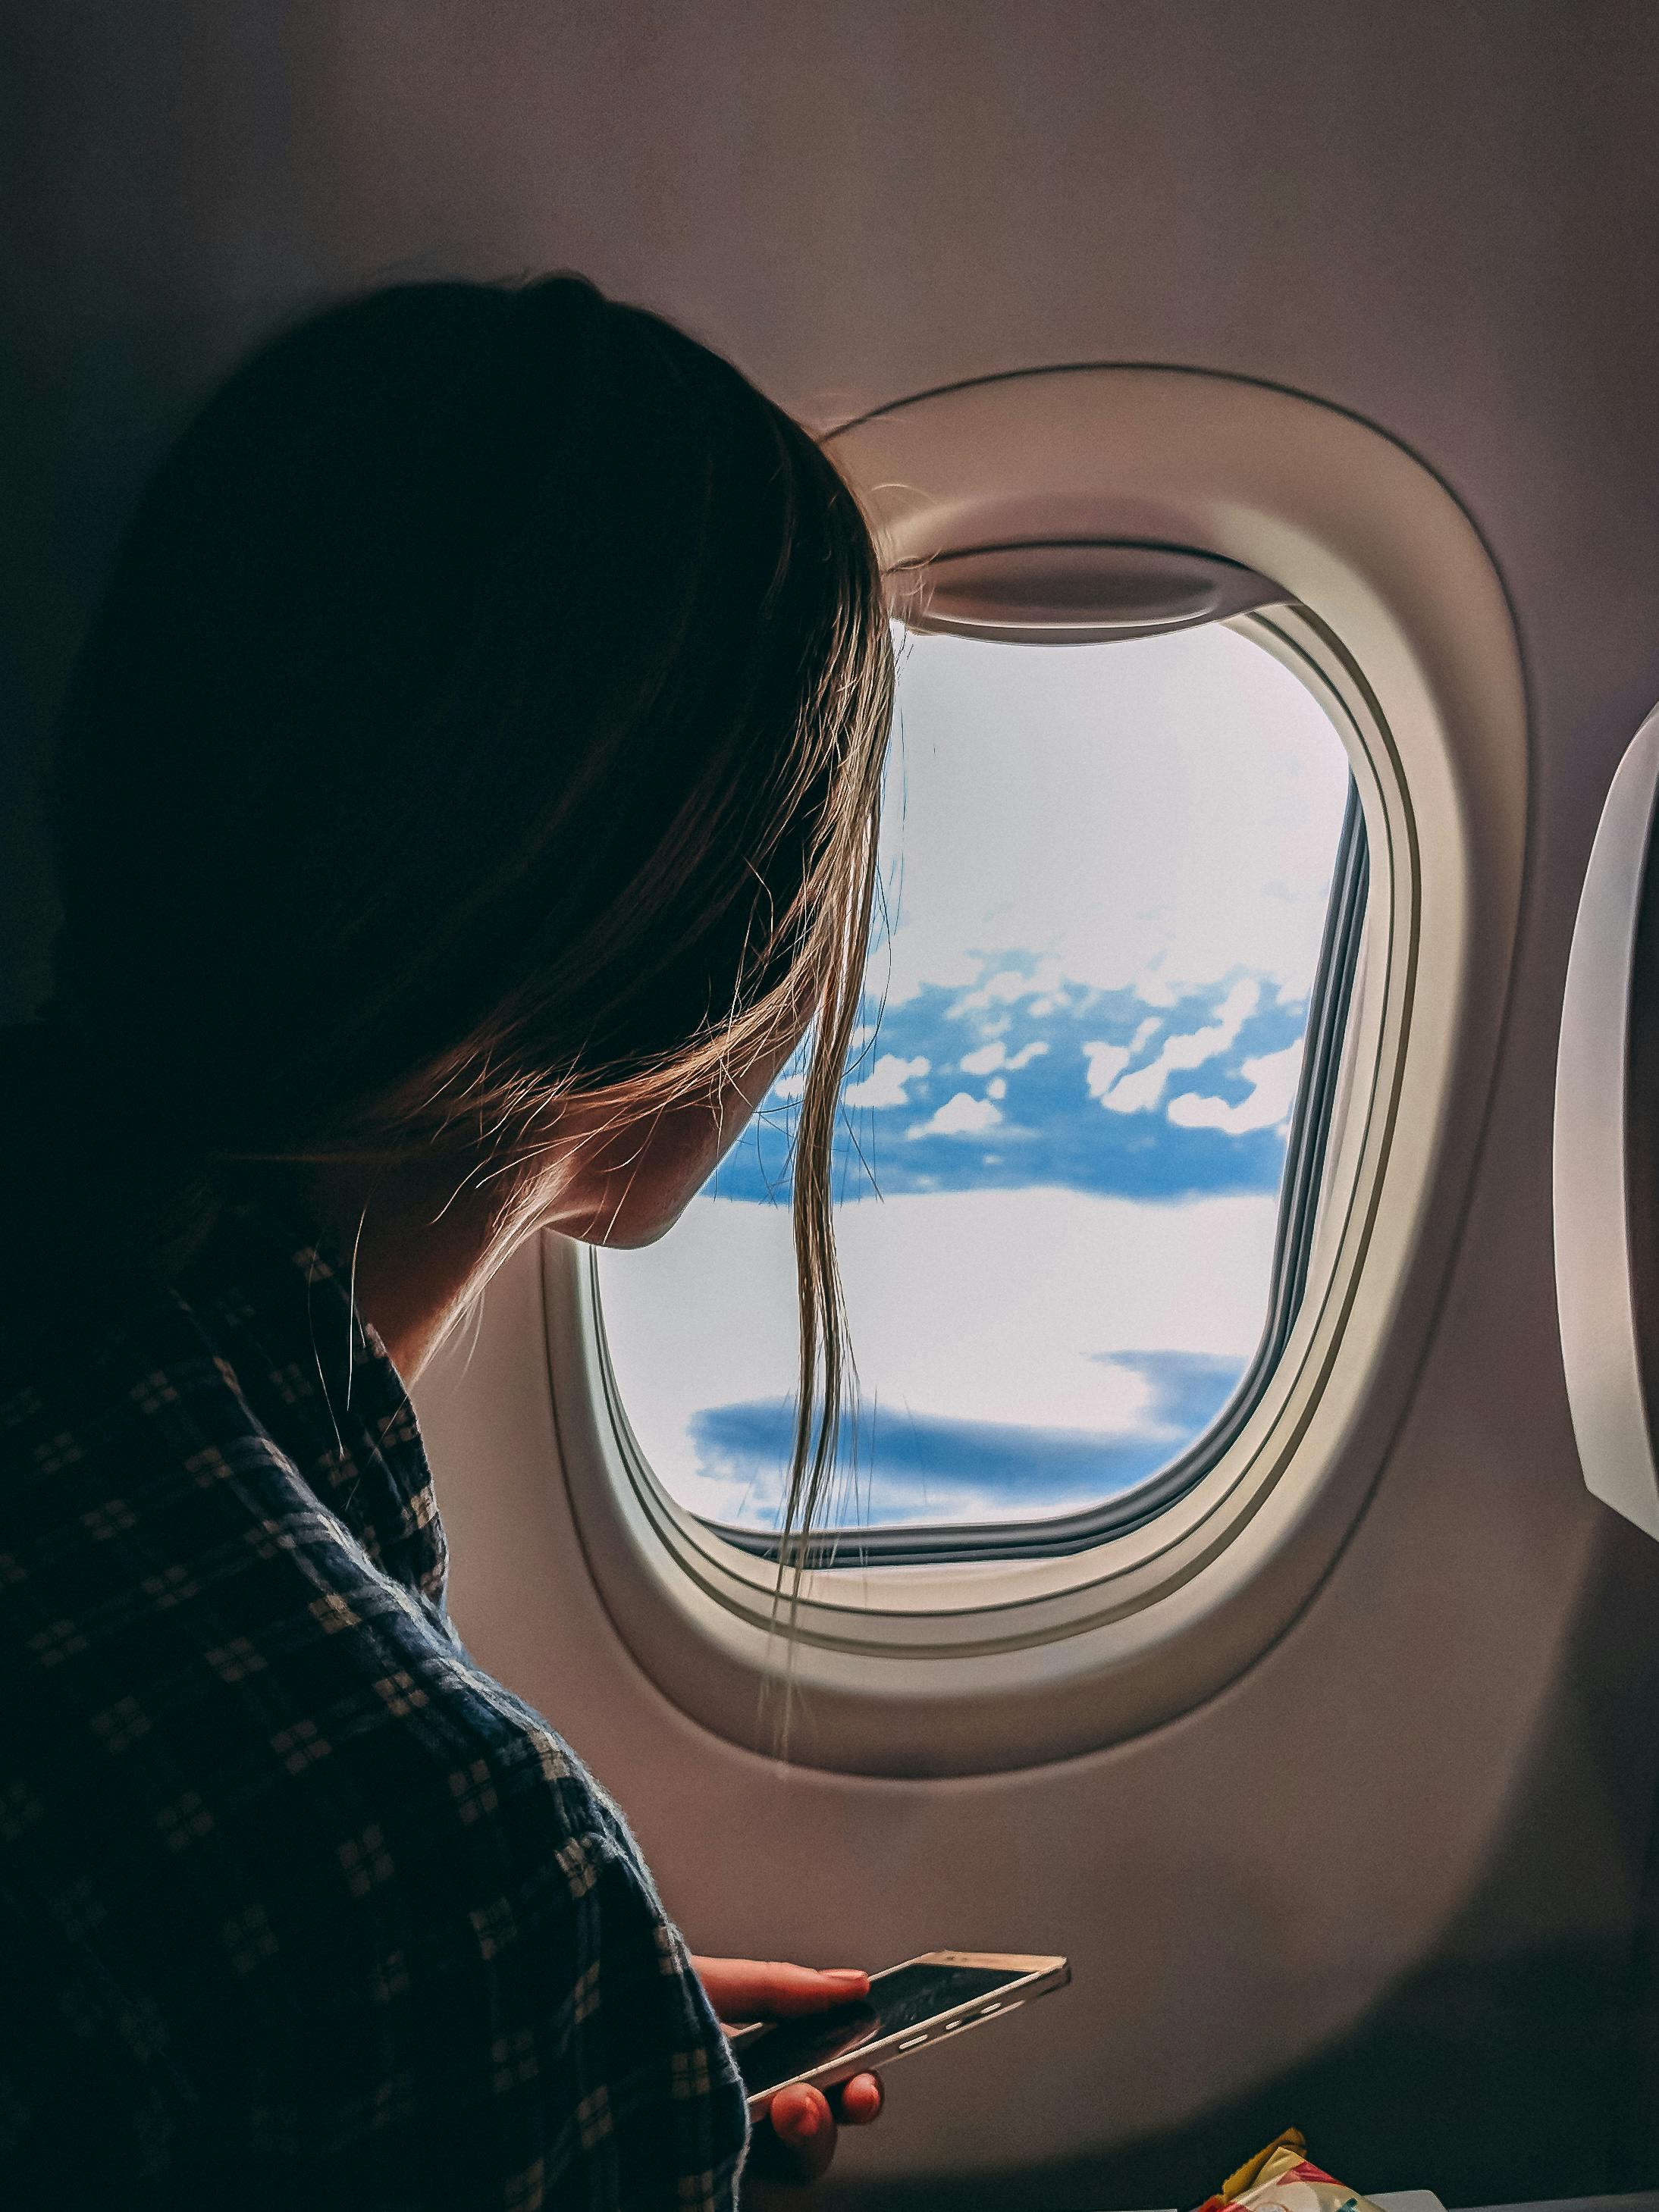 Eine Frau in einem Flugzeug | Quelle: Pexels